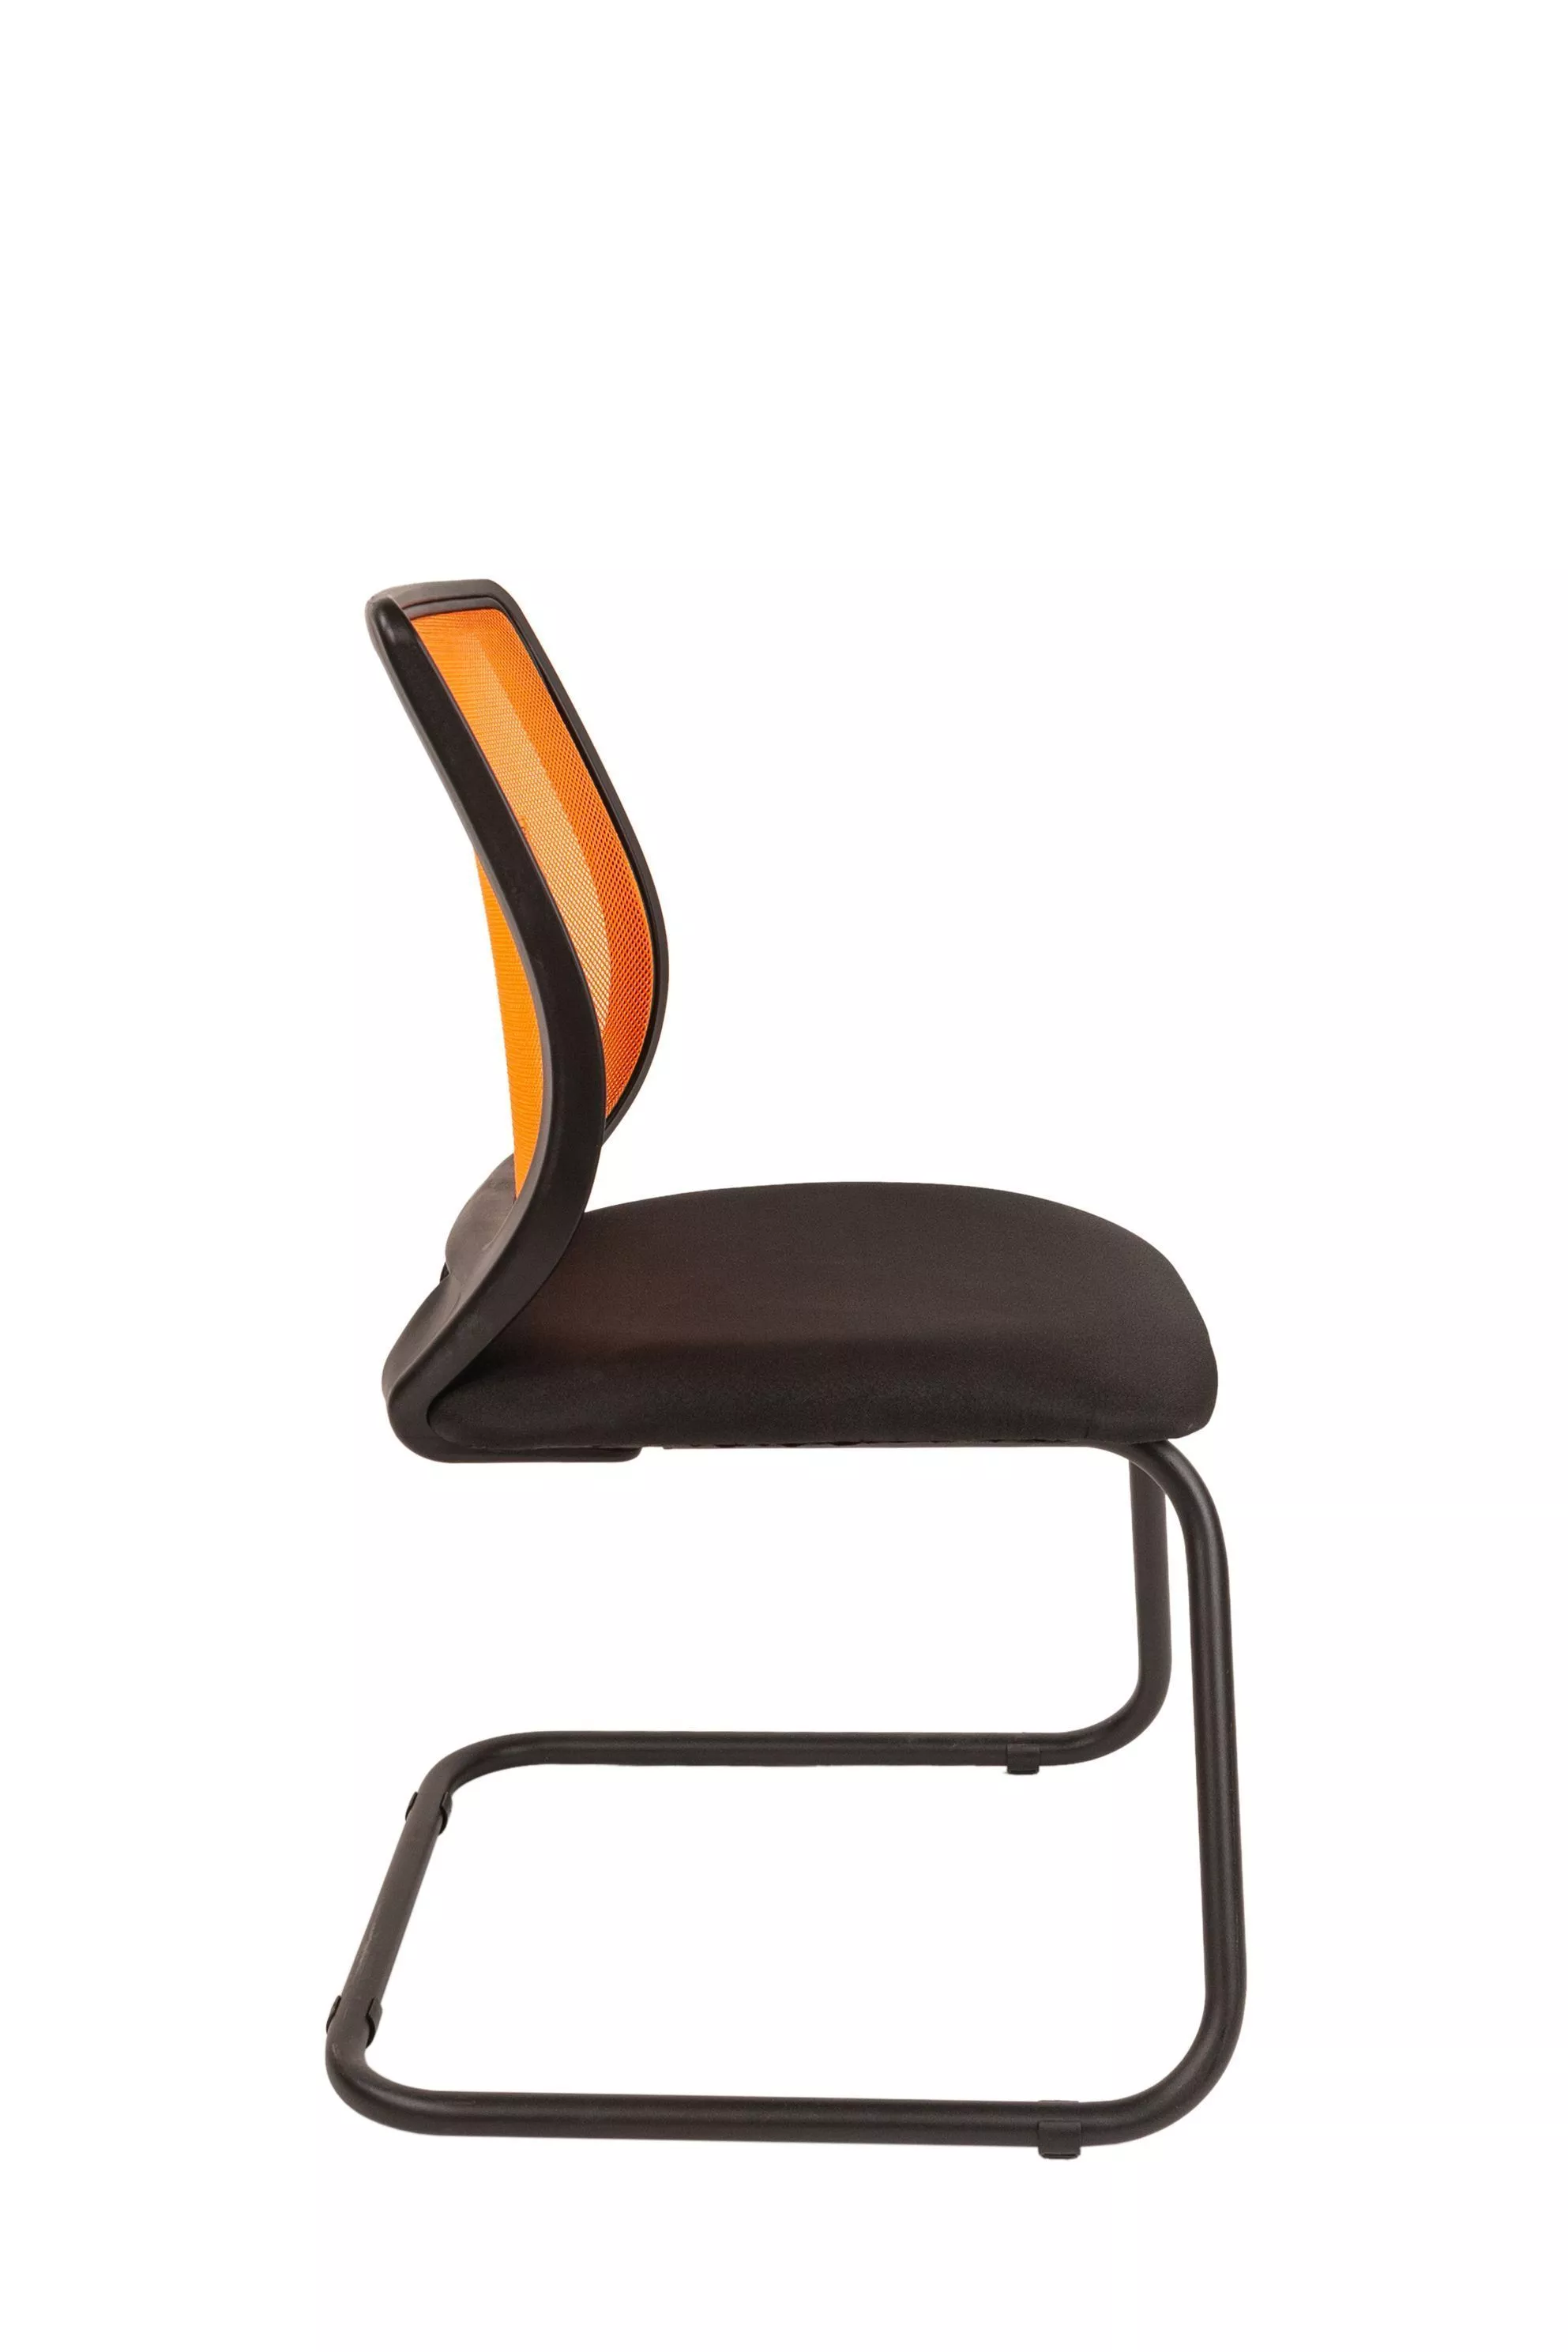 Кресло на полозьях CHAIRMAN 699 V оранжевый